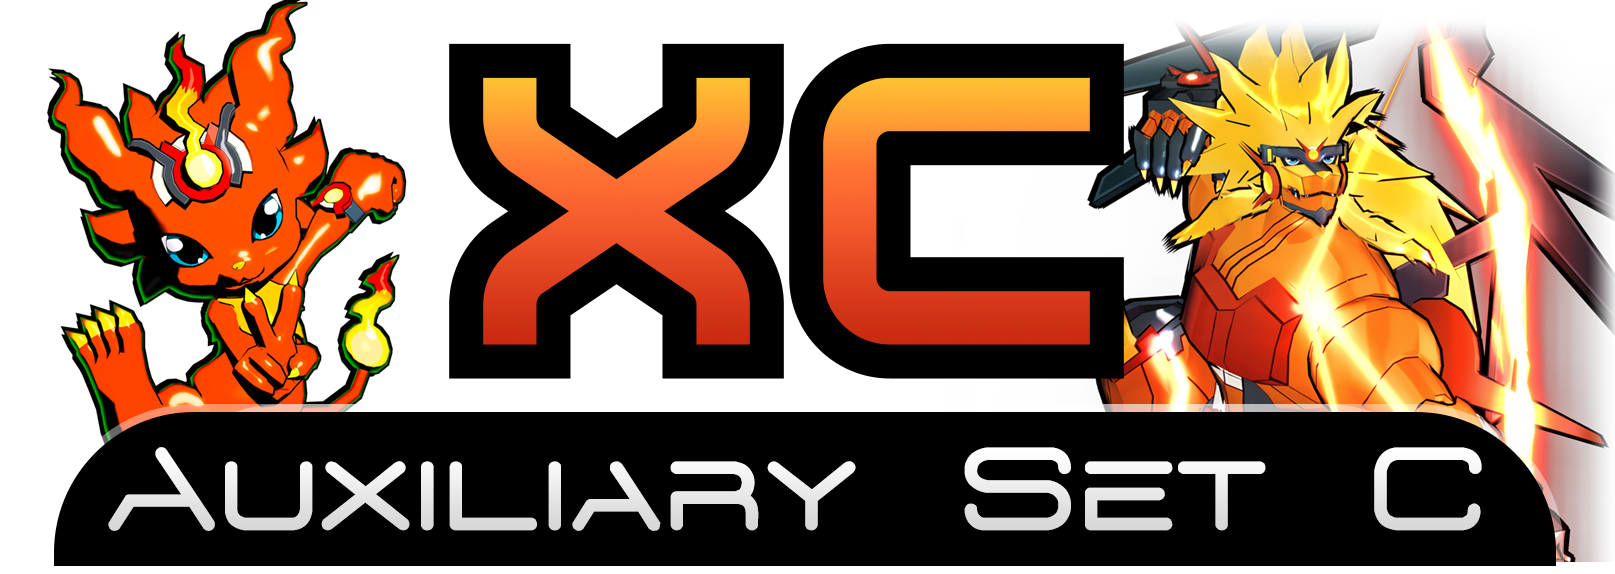 Logo for set XC with Coronamon and Apollomon